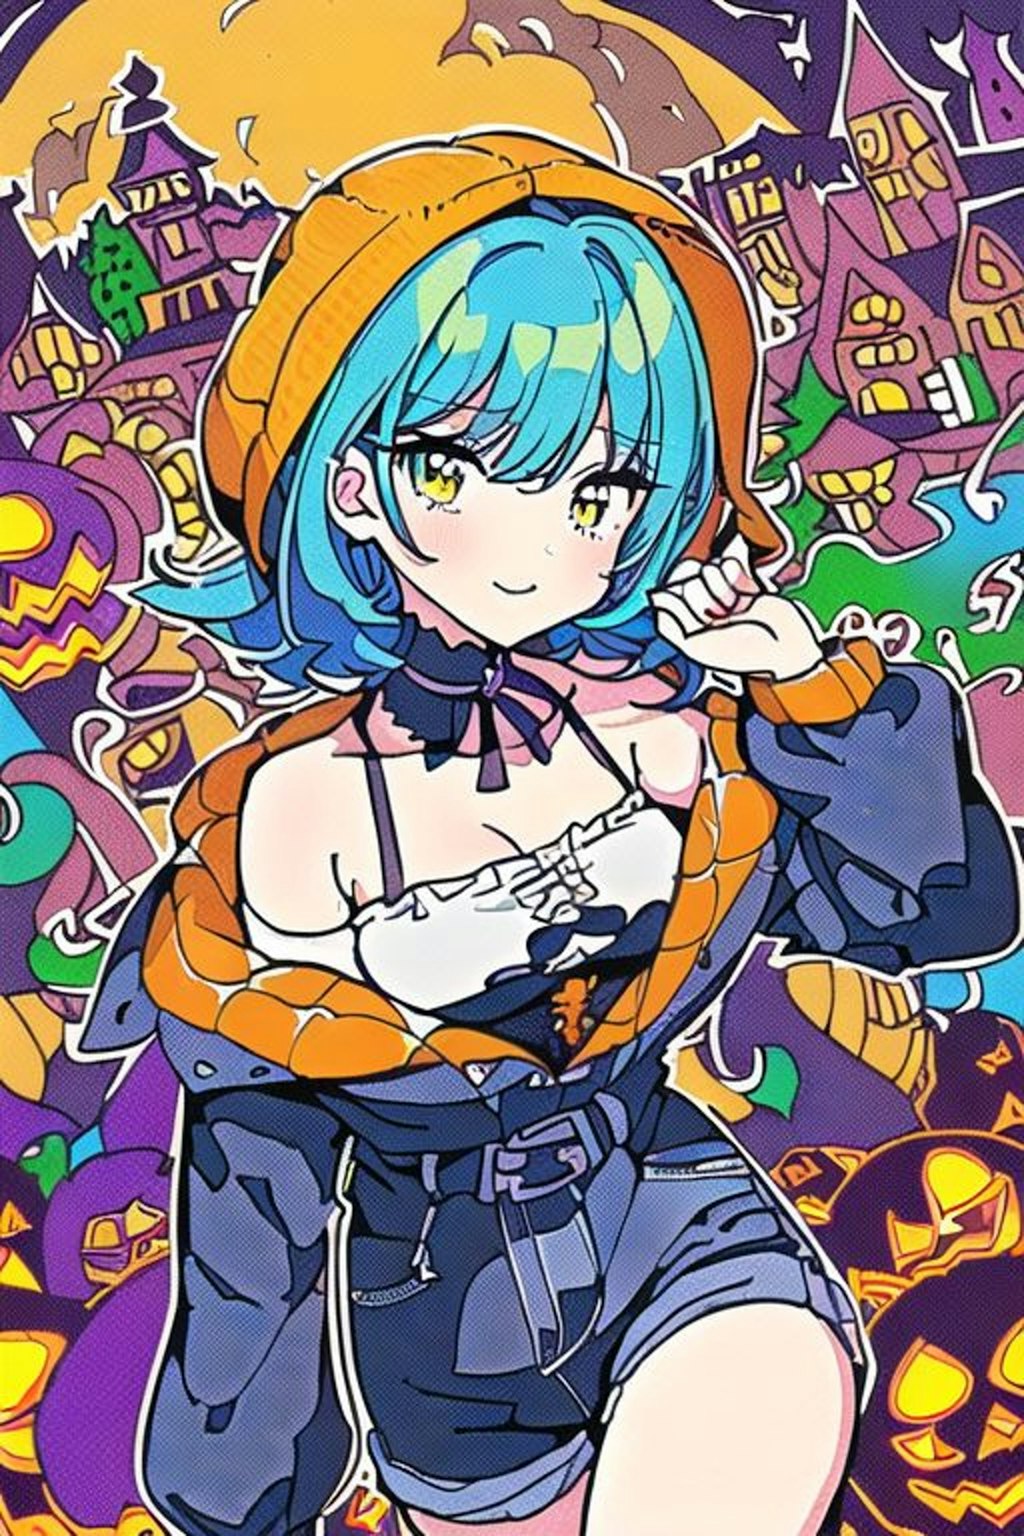 Happy Halloween!!(Colorful Girl)